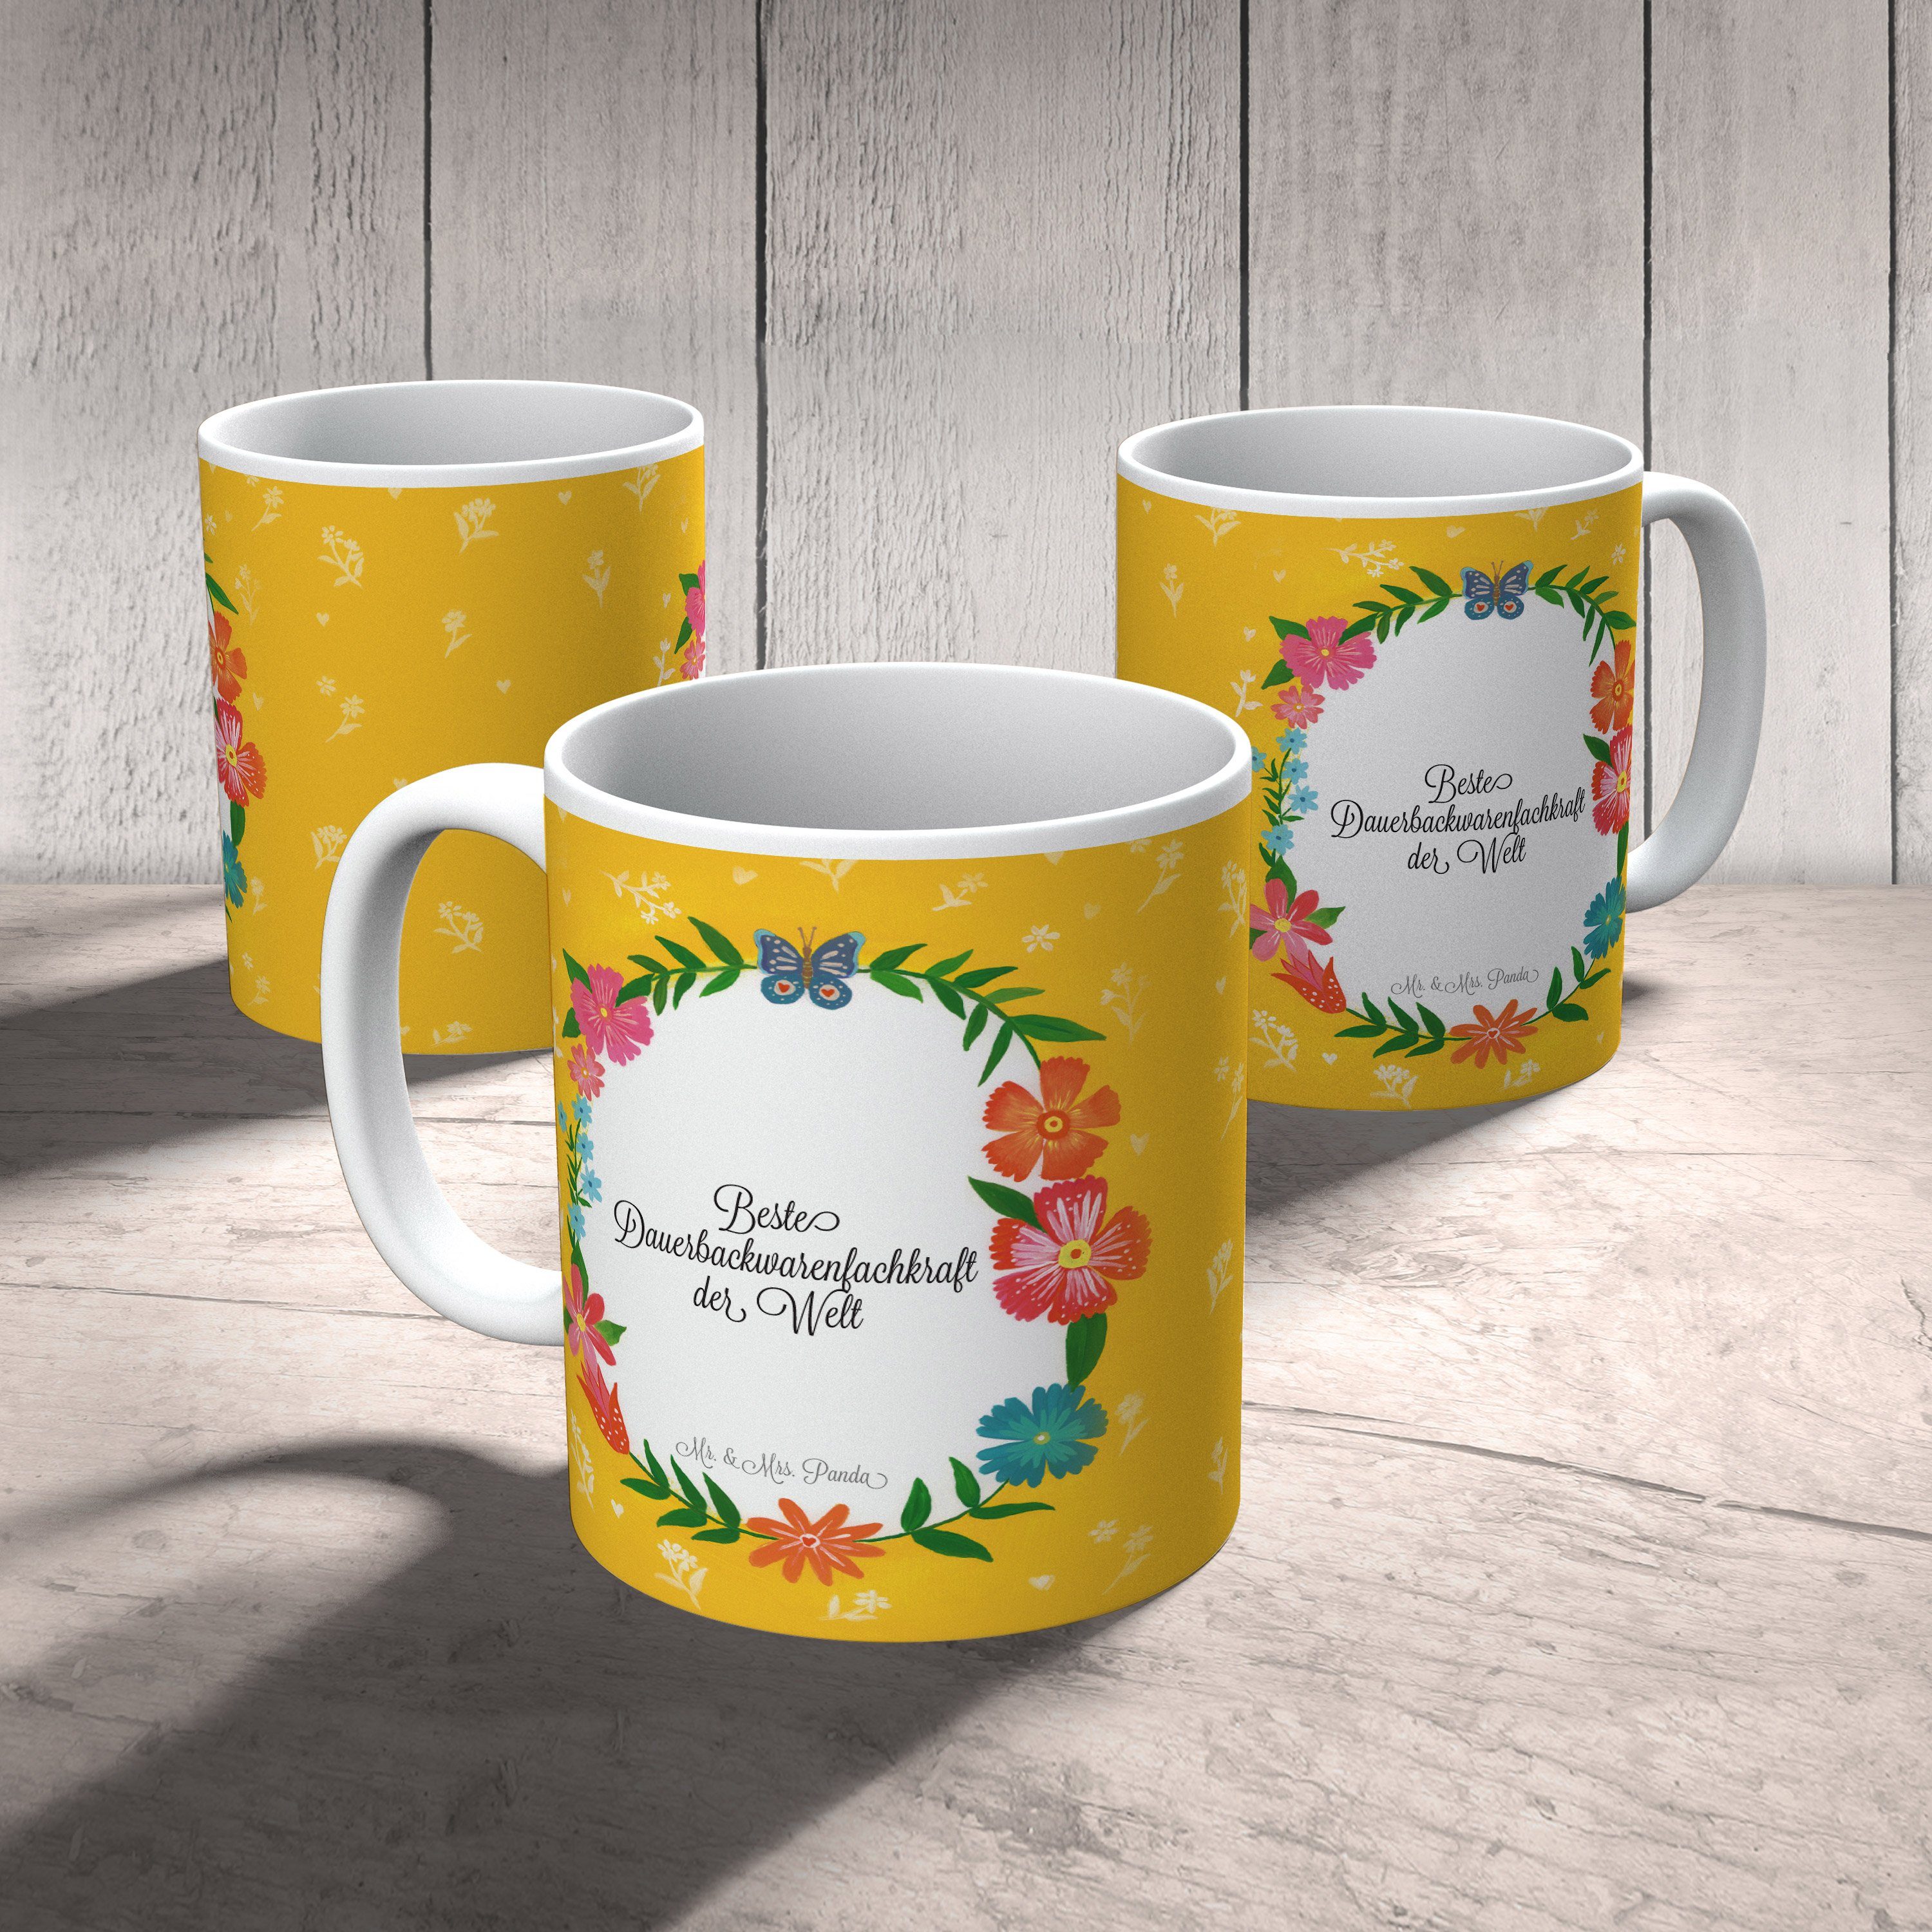 Keramik - Dauerbackwarenfachkraft Mrs. Panda Teetas, Geschenk, & Gratulation, Kaffeebecher, Mr. Tasse